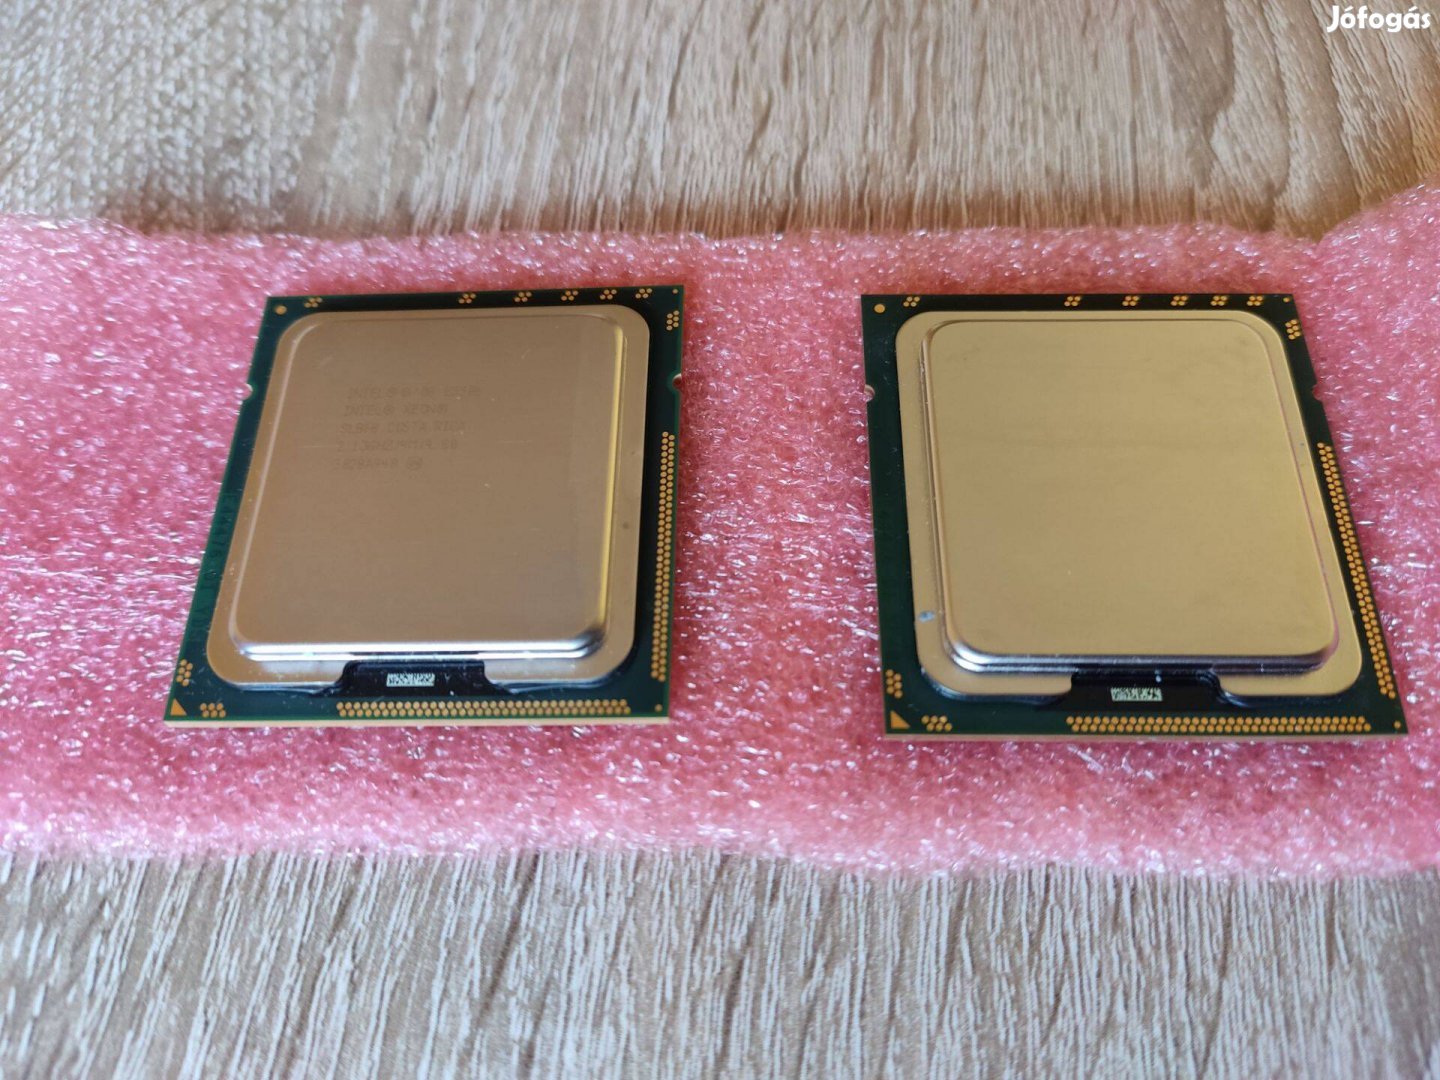 Eladó 2db Intel Xeon E5506 Processor / CPU / processzor ! Külön is !